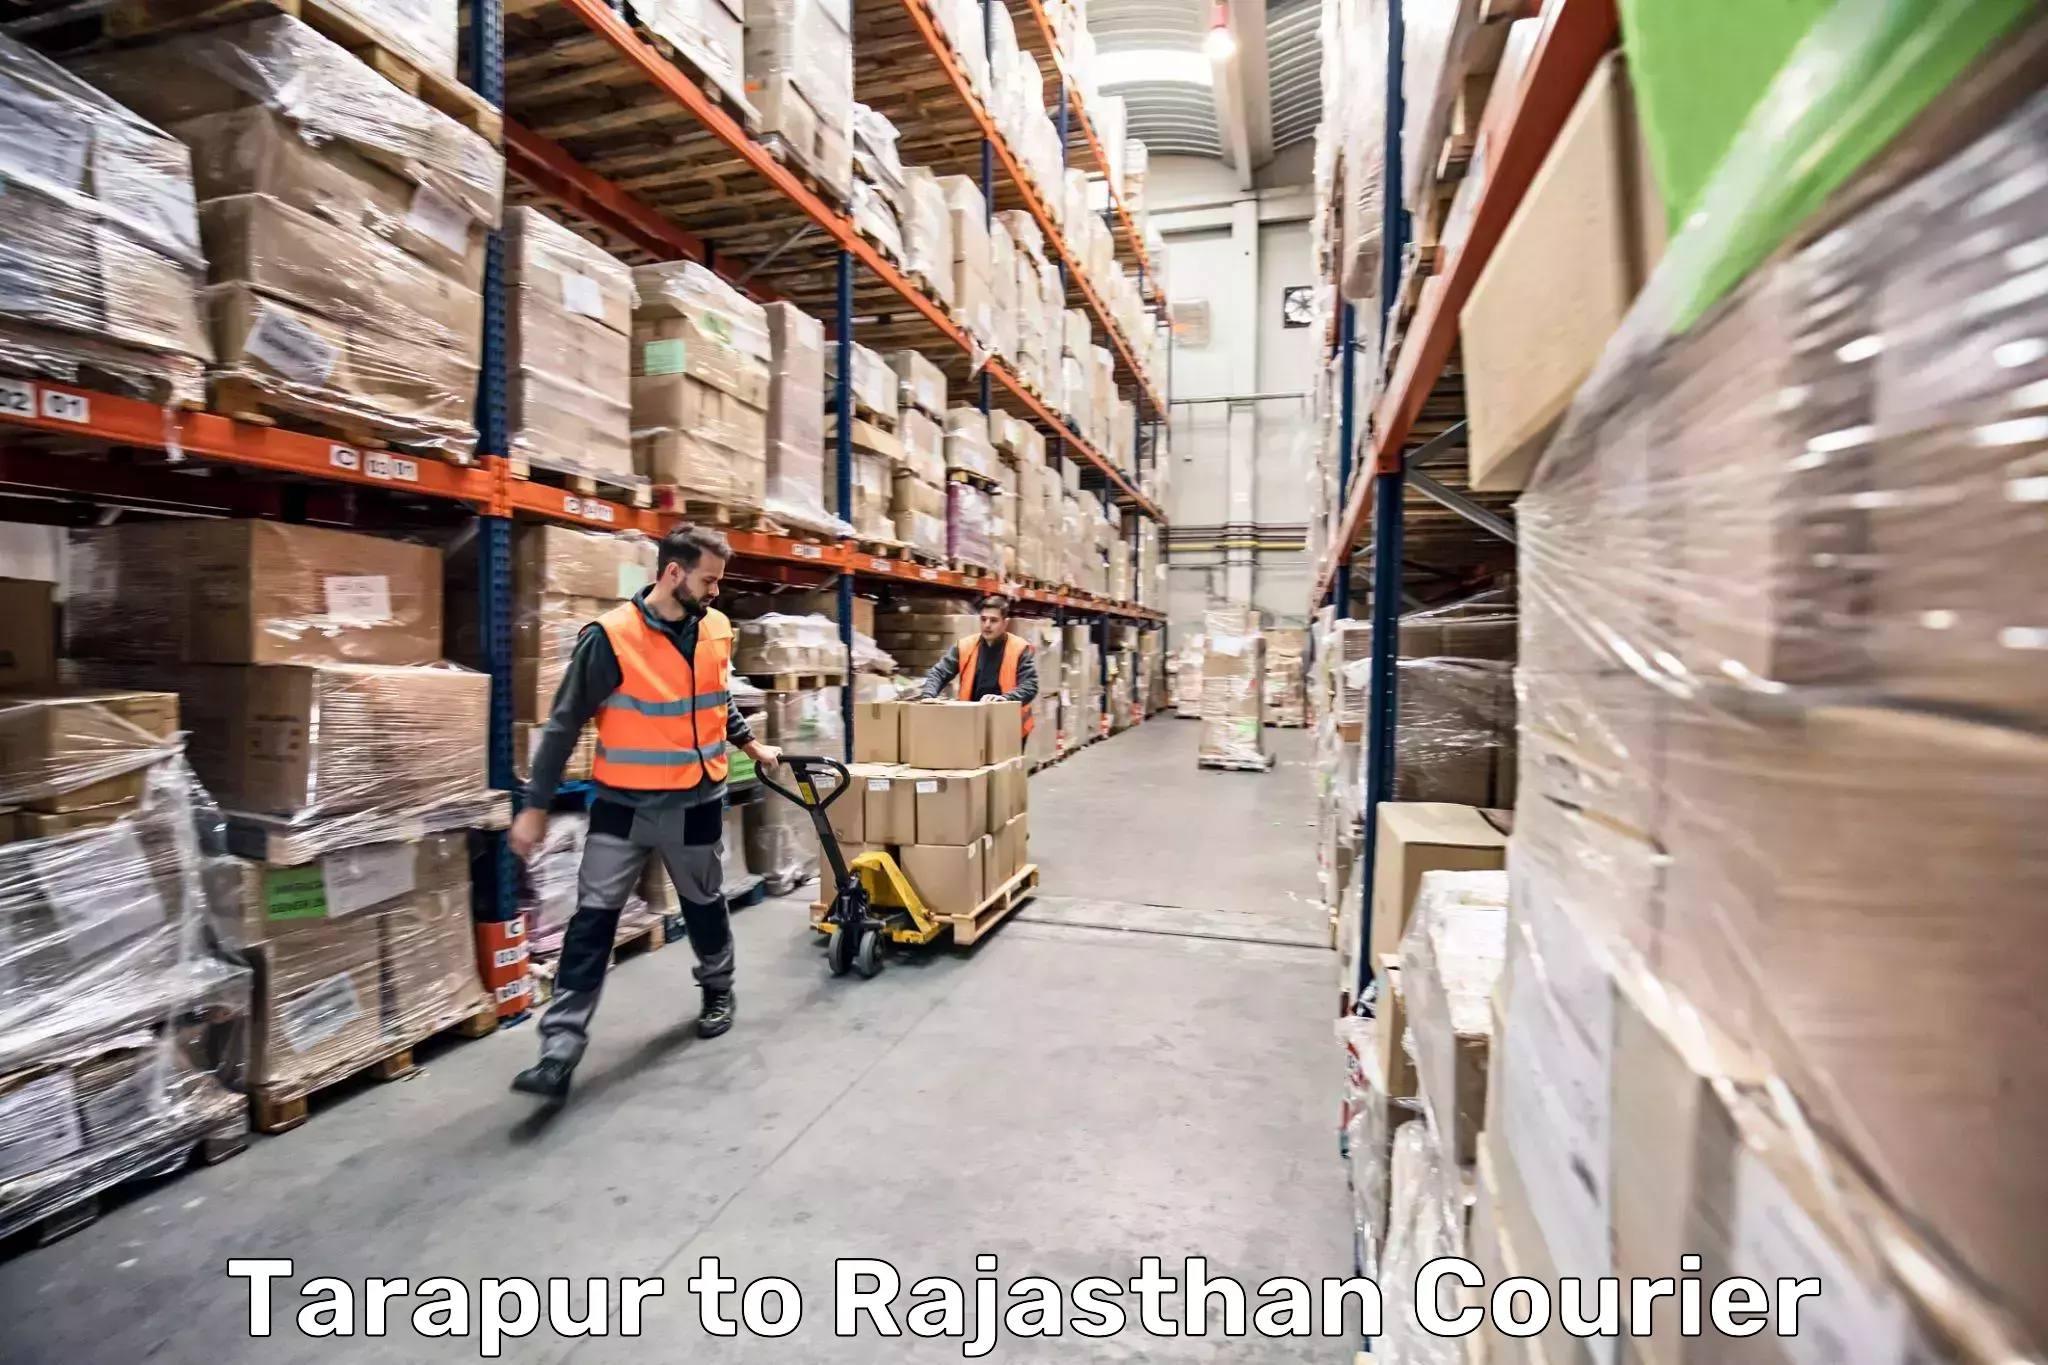 Baggage shipping service Tarapur to Rajasthan